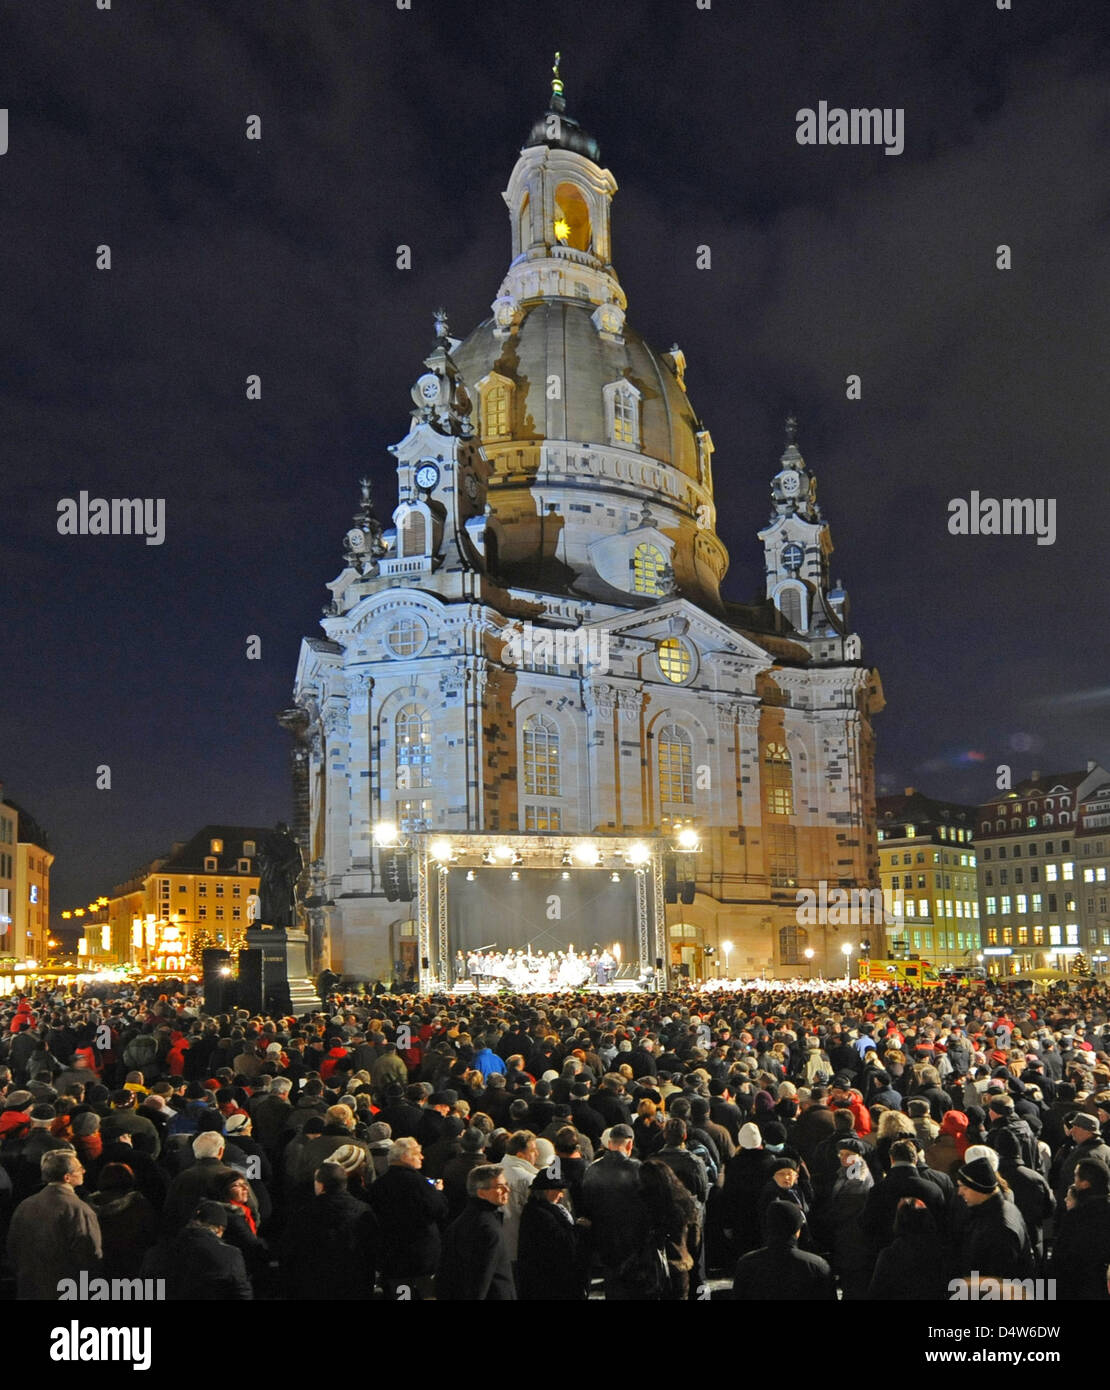 Die Dresdner und Touristen besuchen den 17. Weihnachten Vesper-Gottesdienst außerhalb "Church of Our Lady" in Dresden, Deutschland, 23. Dezember 2009. Foto: Matthias Hiekel Stockfoto